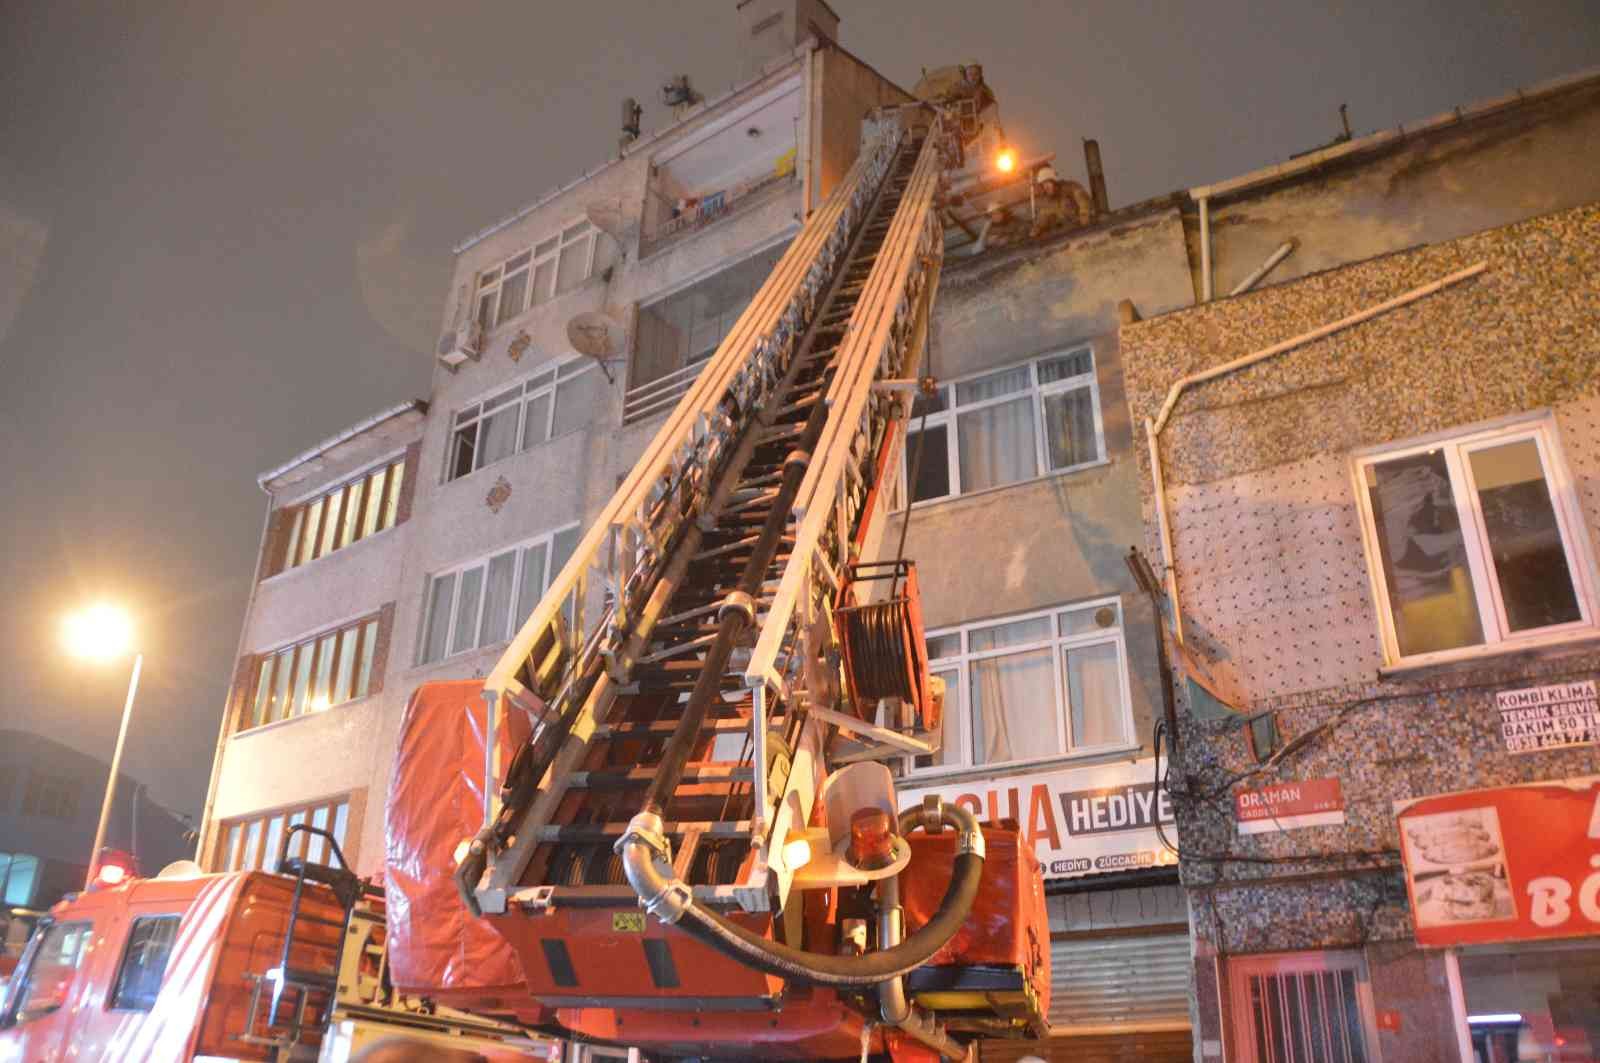 Fatih’te çatı katında yangın: Dairedeki kadını itfaiye kurtardı #istanbul